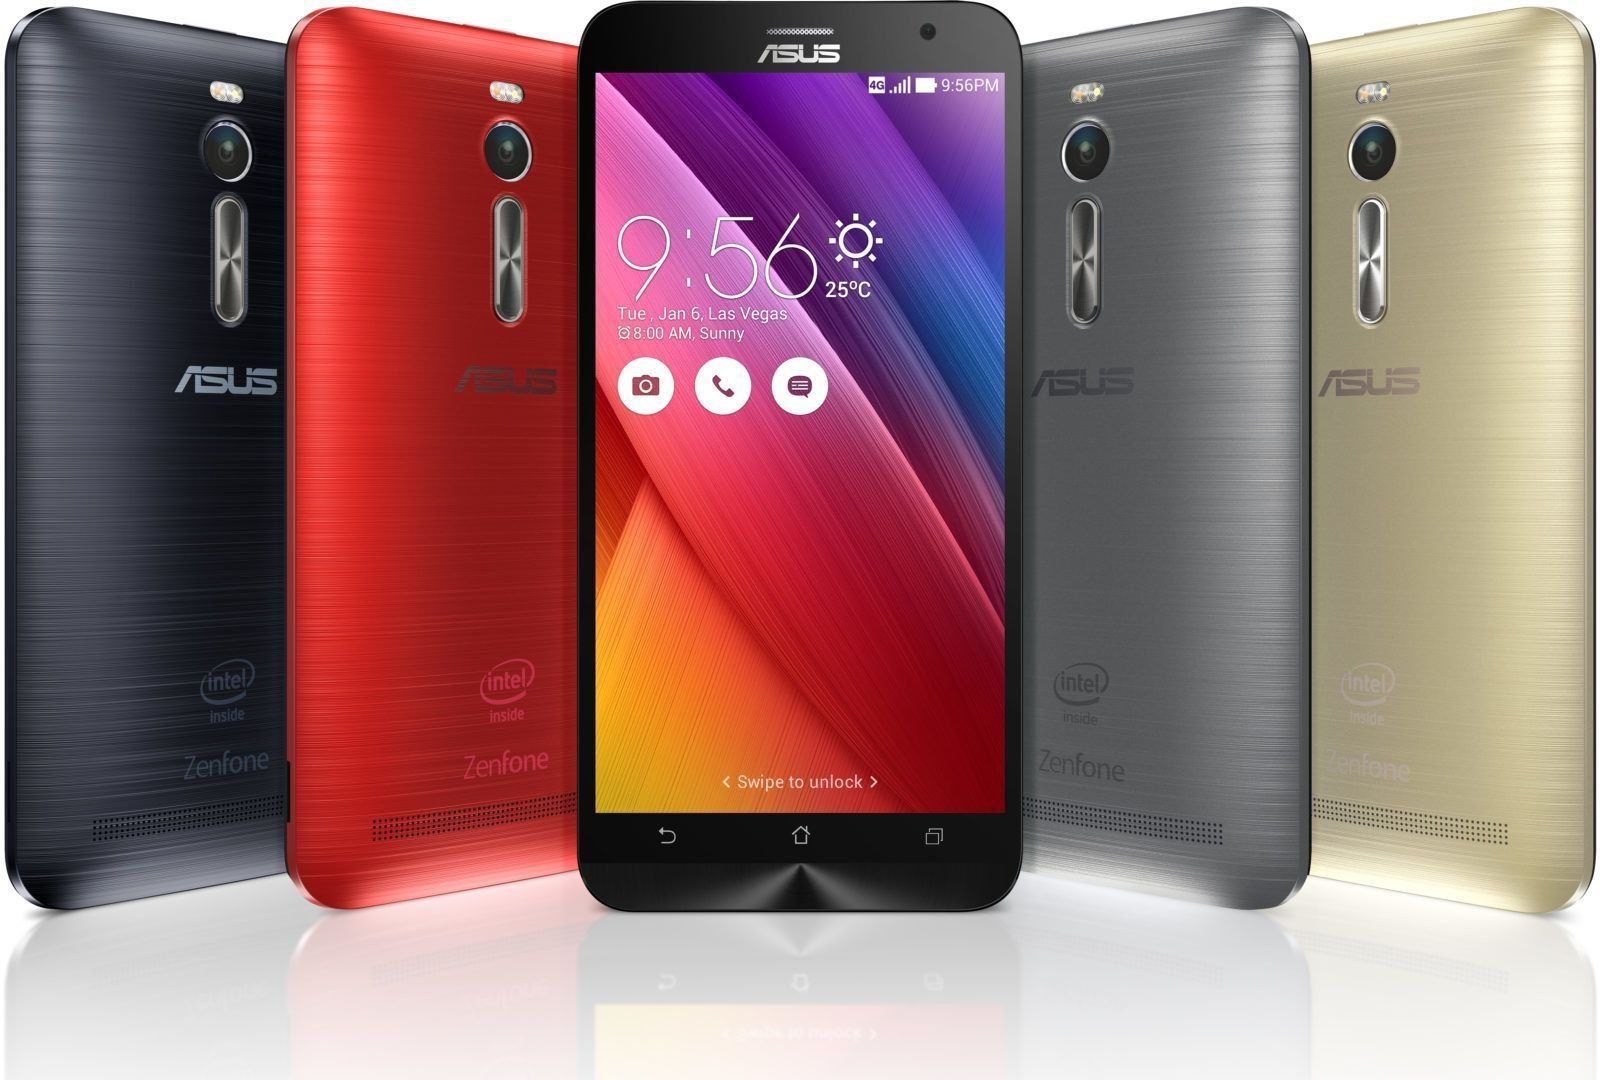 Telefon pintar ASUS ZenFone 3 Max ZC553KL 2 / 32GB - kelebihan dan kekurangan